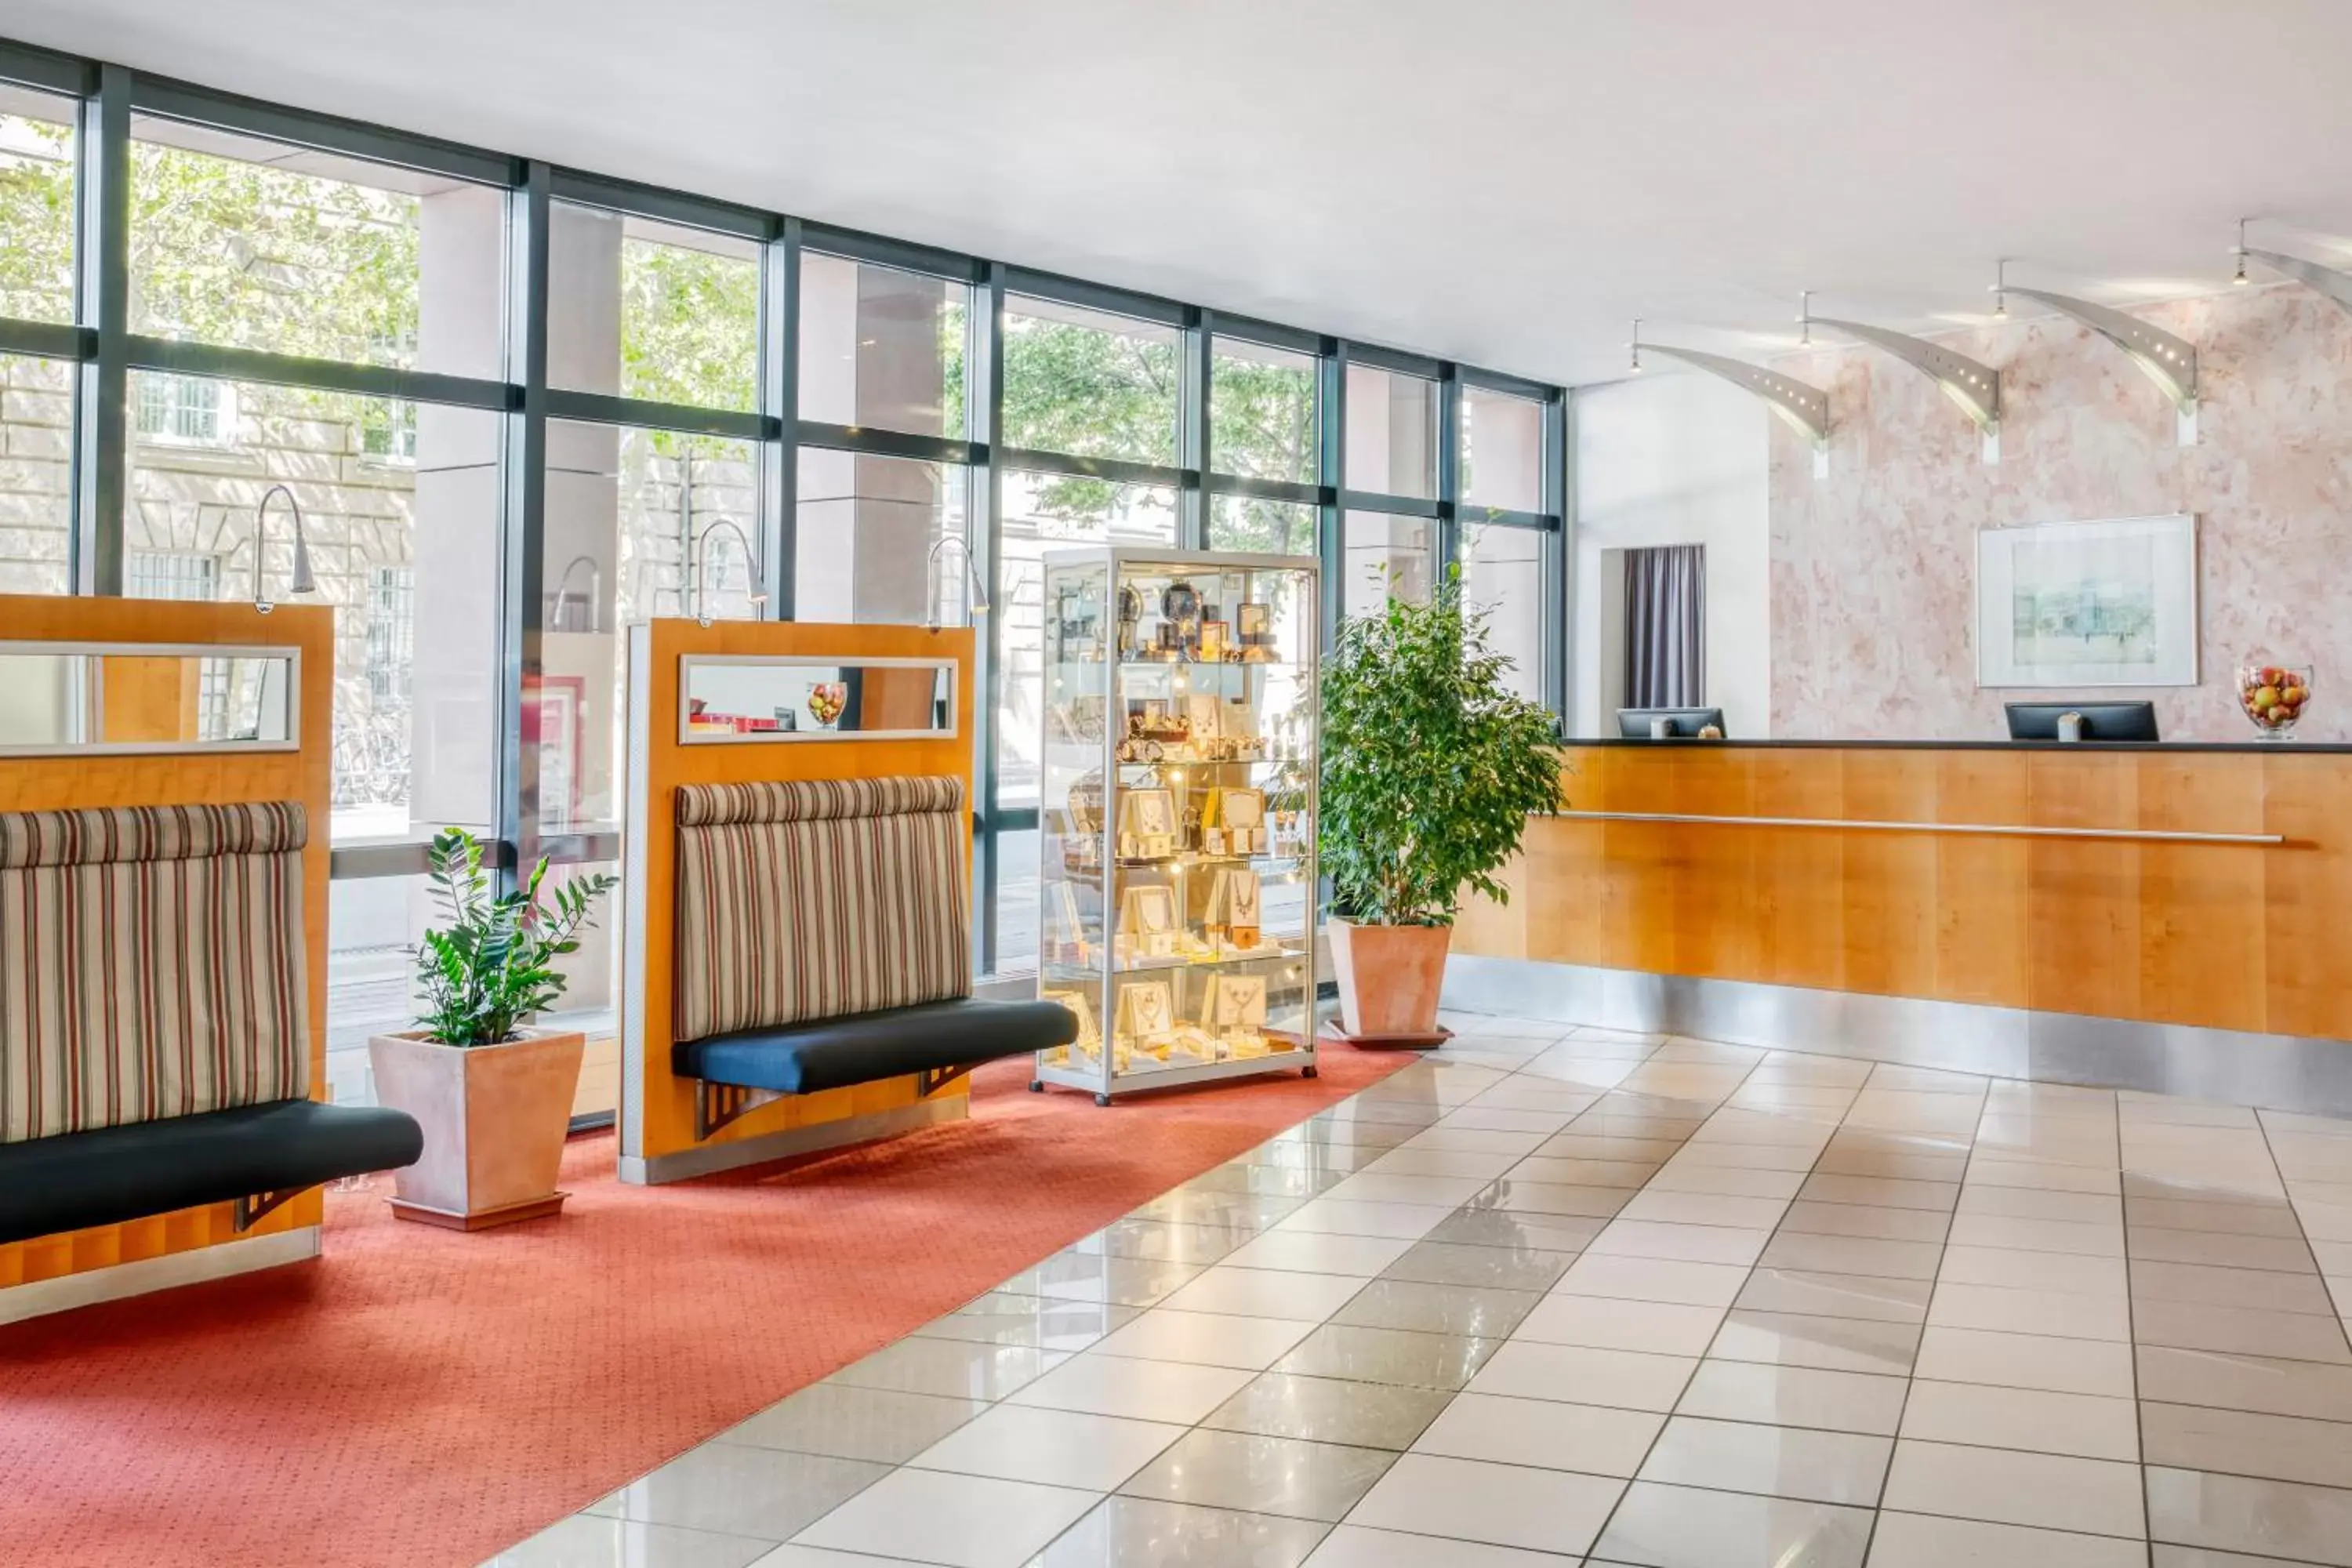 Lobby or reception, Lobby/Reception in IntercityHotel Erfurt